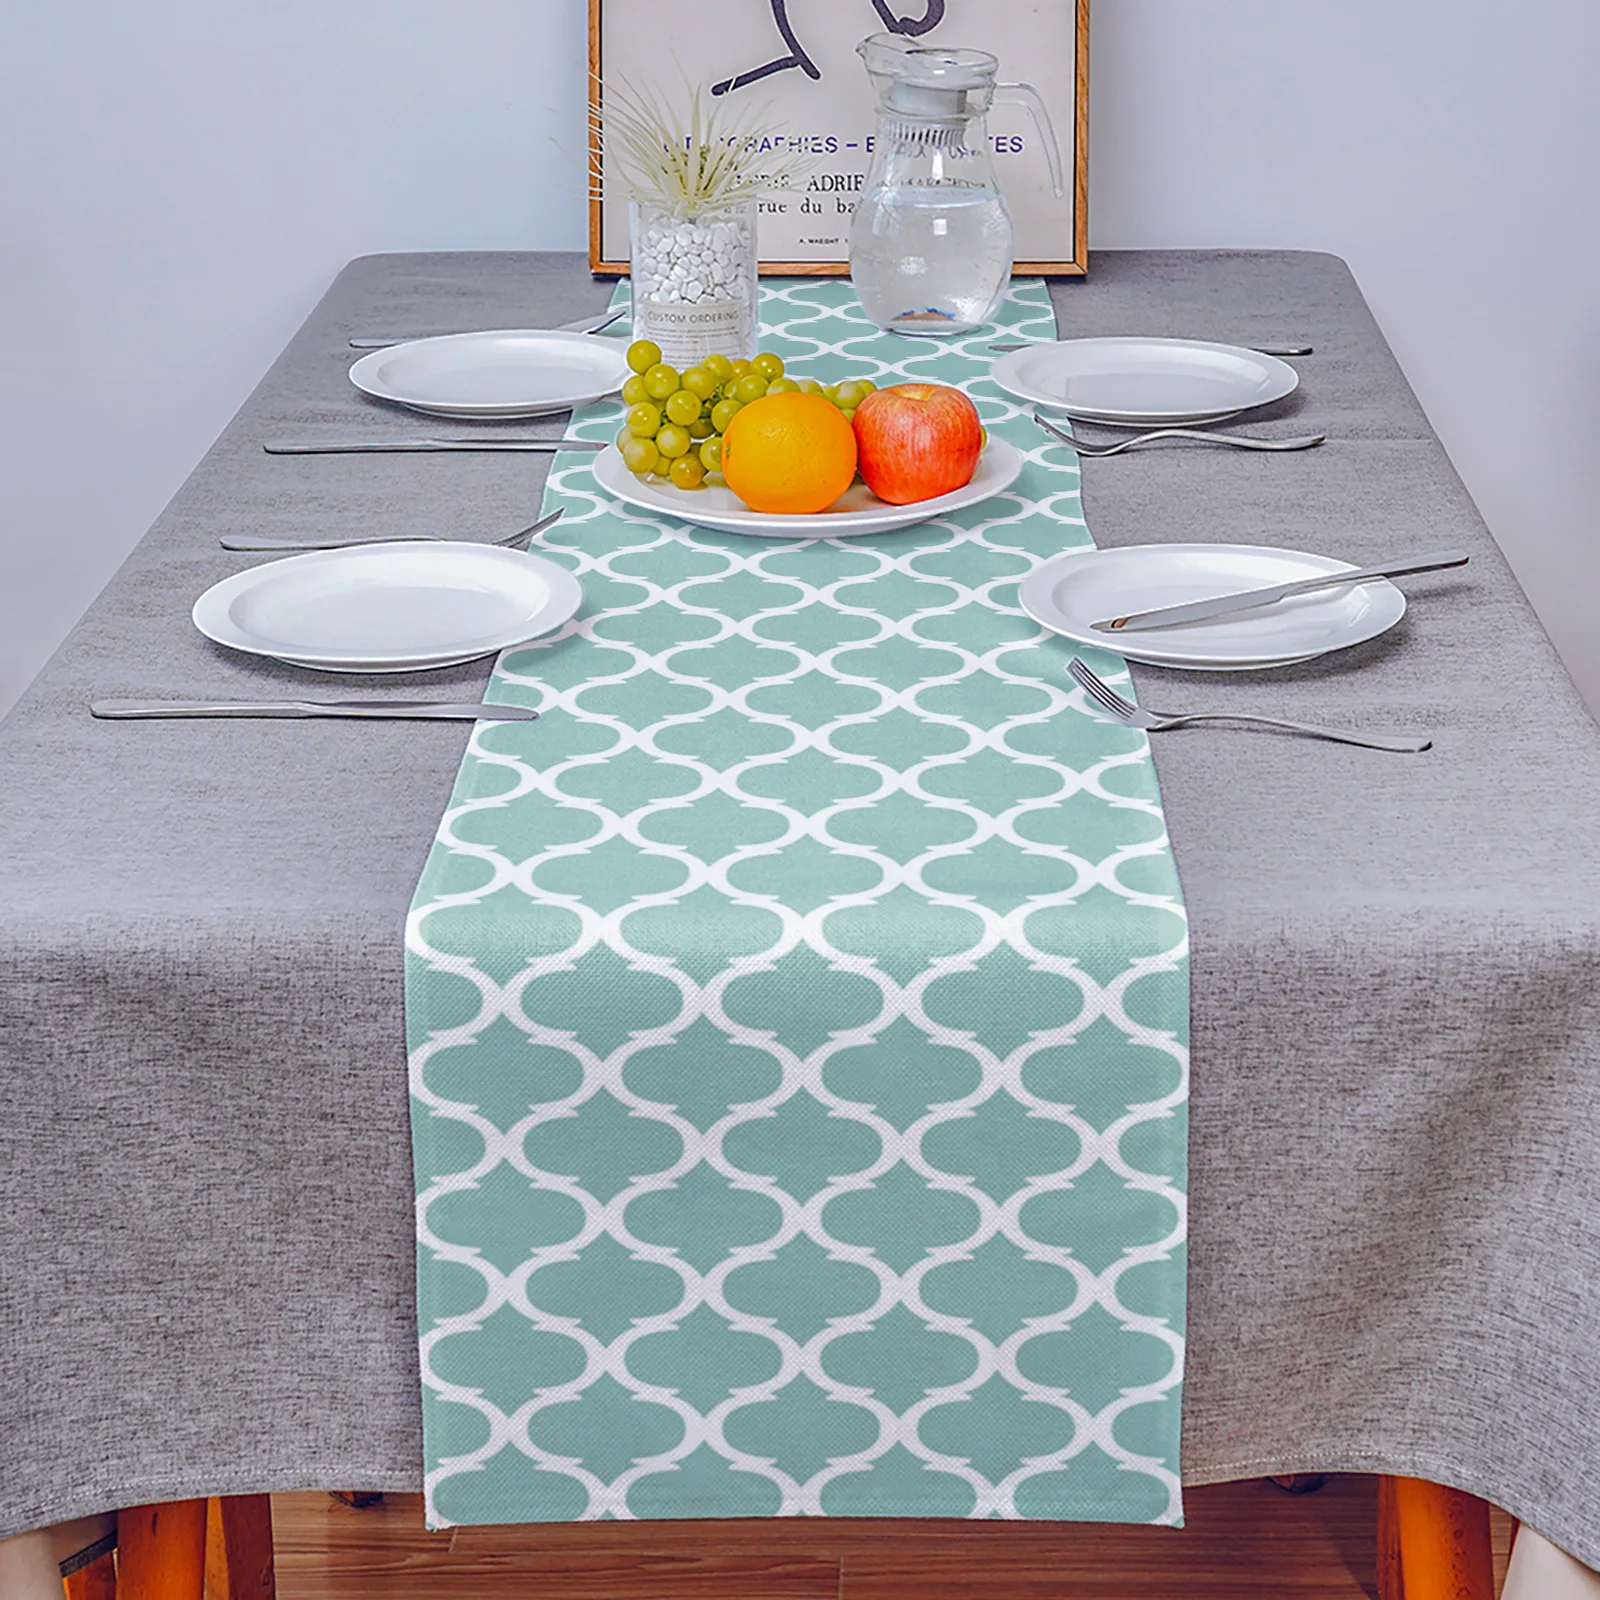 Maroko tyrkysová přehoz jídelní stůl runner svatební dekorace anti-stain obdélníkové stůl runner pro jídelní stůl zemi dekorace